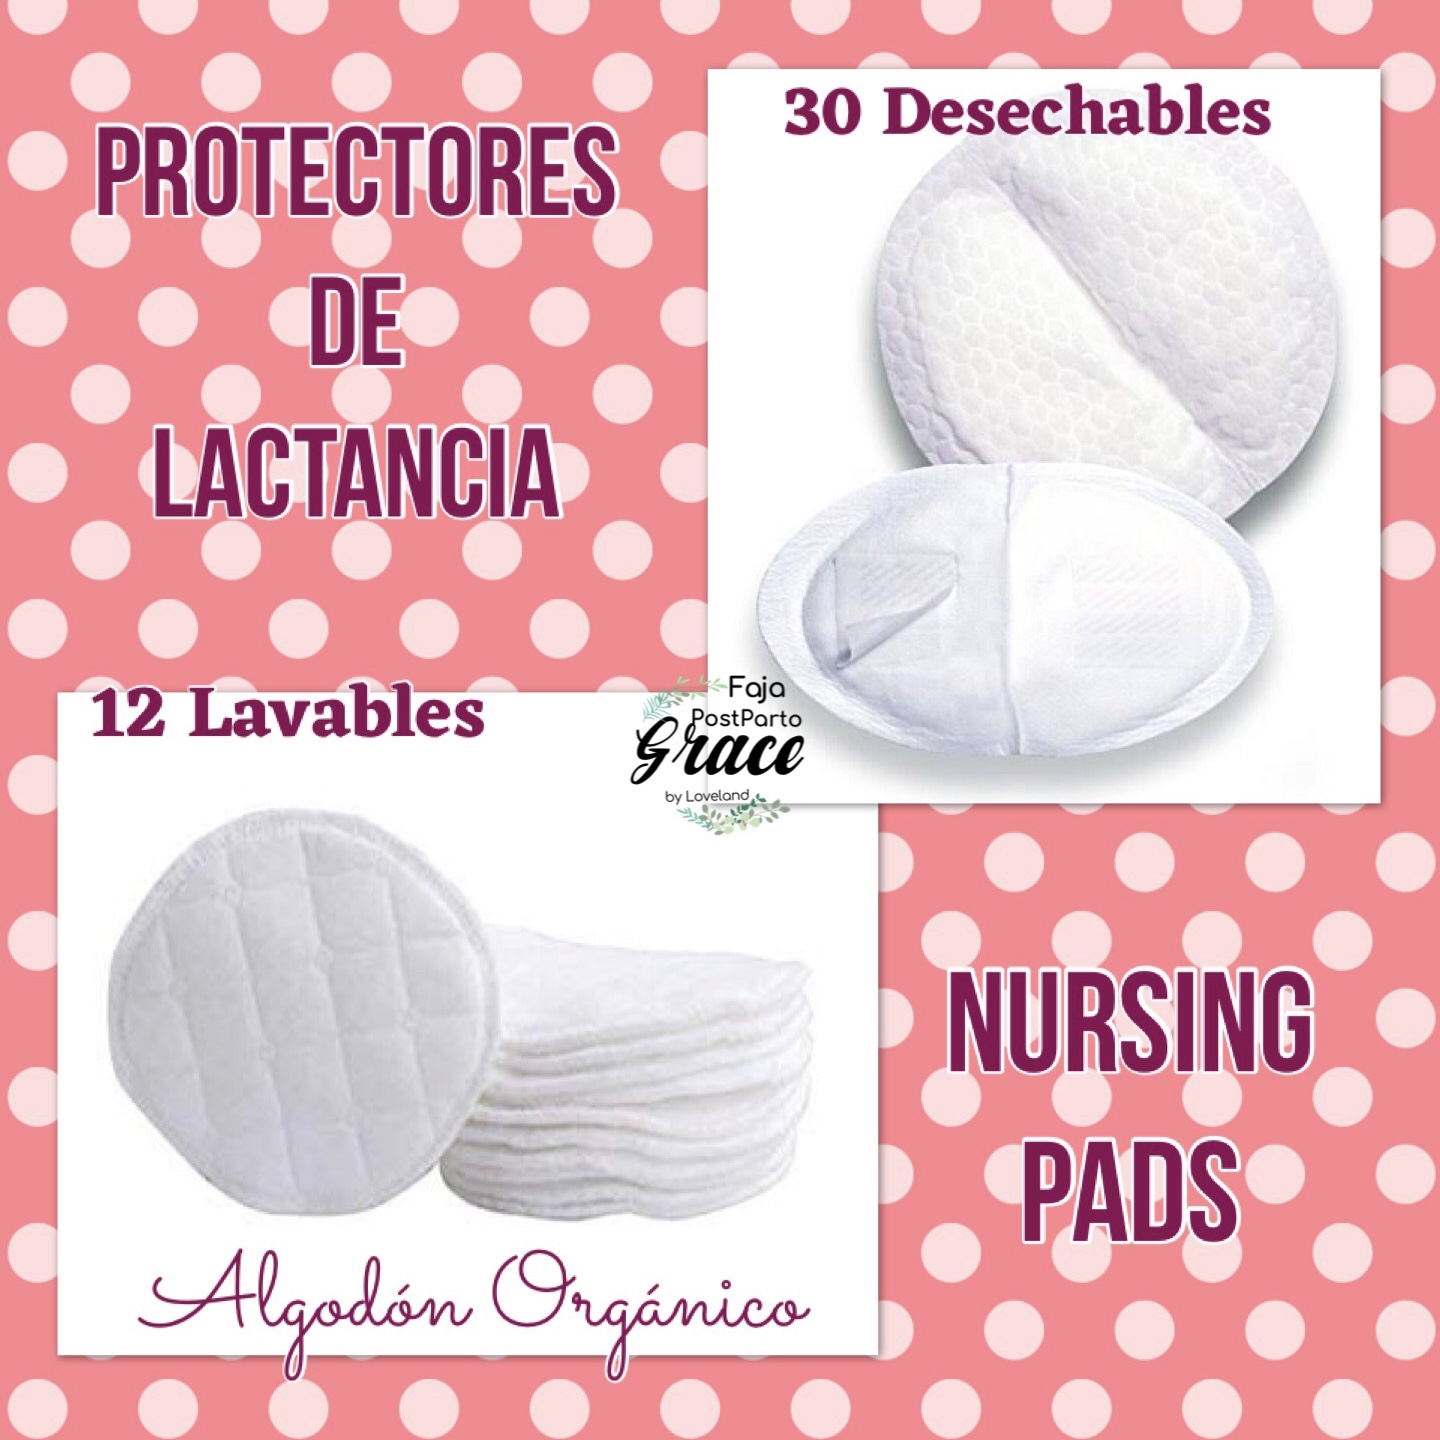 PROTECTORES DE LACTANCIA (NURSING PADS)